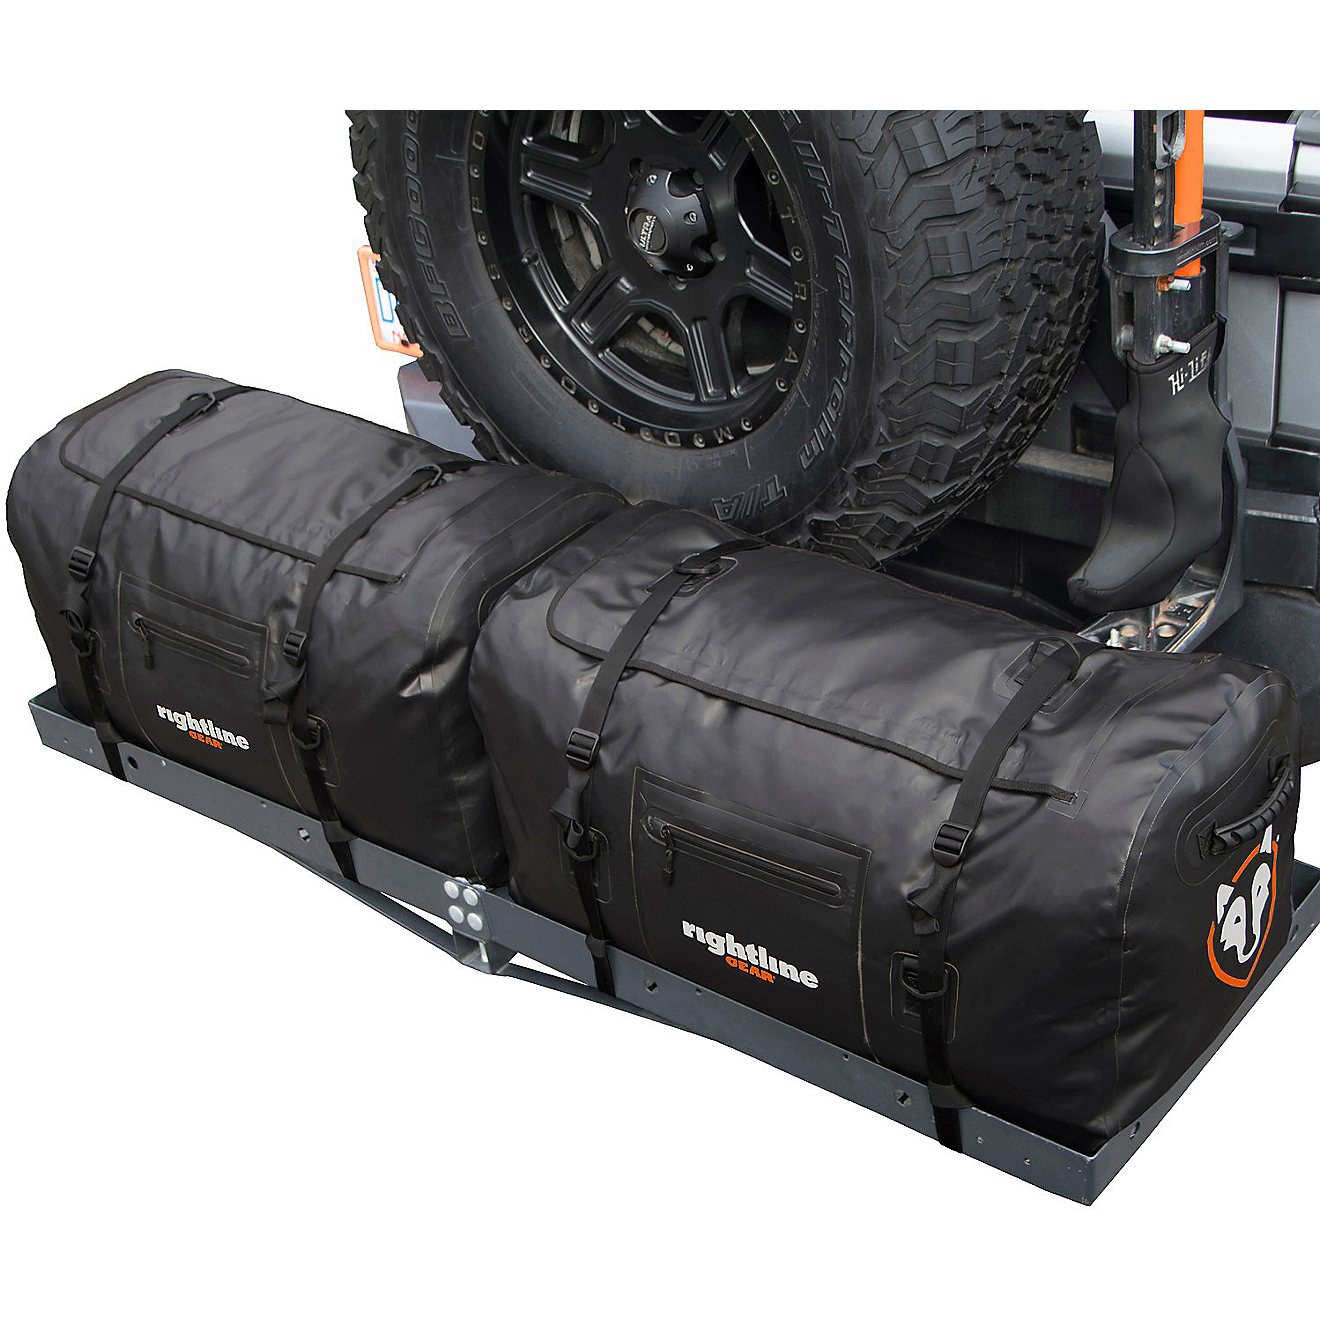 Rightline Gear 120 L 4x4 Duffel Bag                                                                                              - view number 5